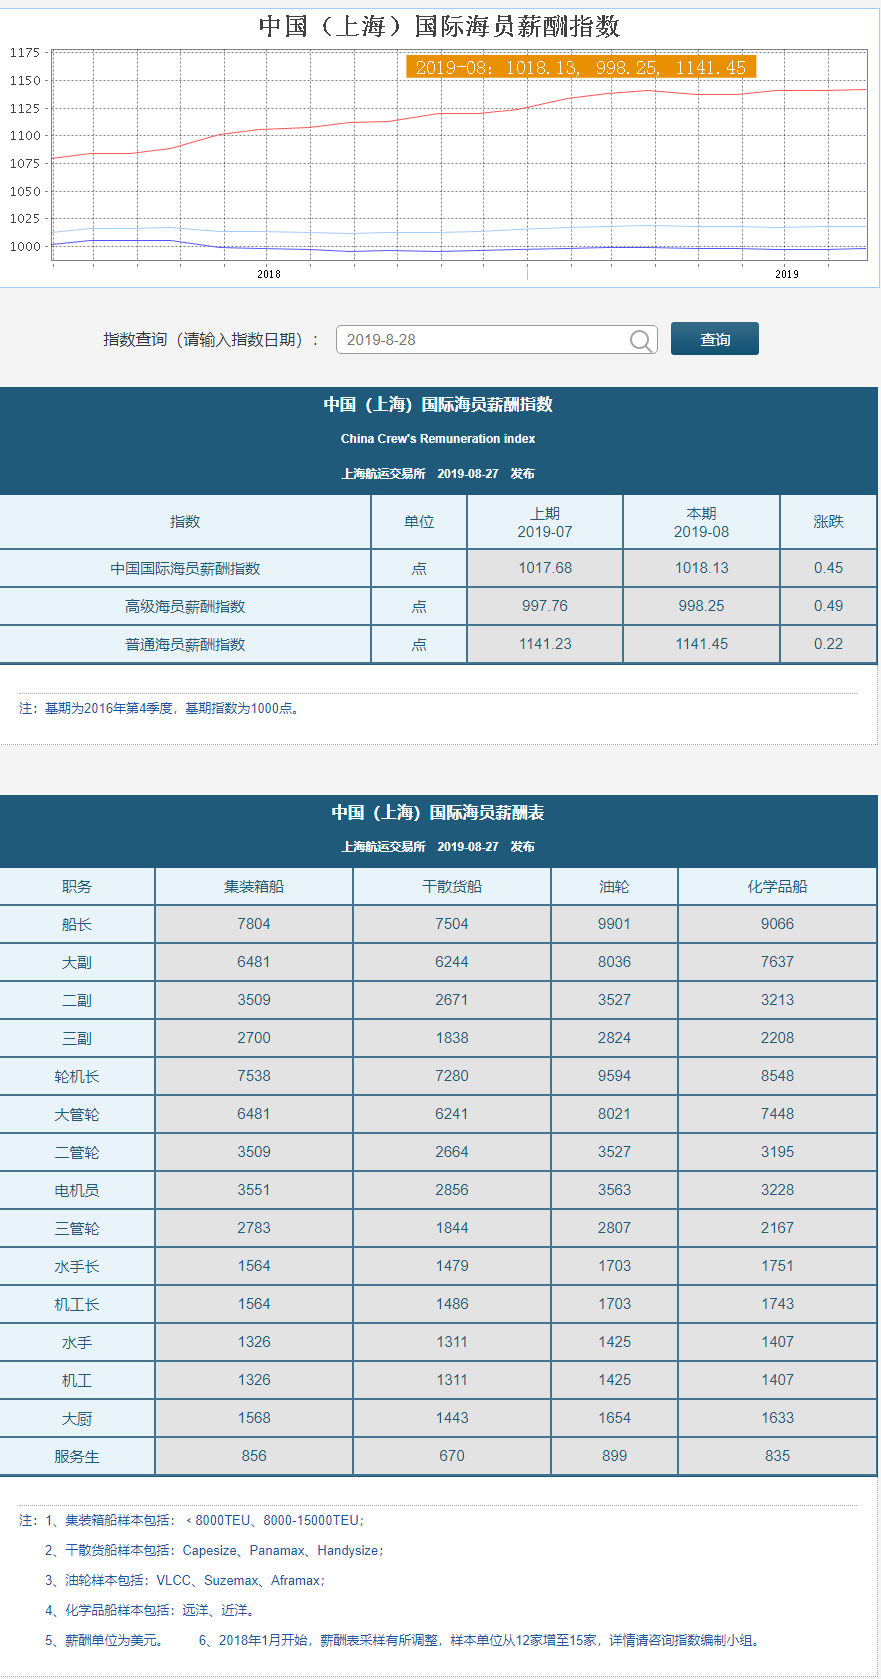 中国（上海）国际海员薪酬指数 CCRI _ 上海航运交易所 0828.png